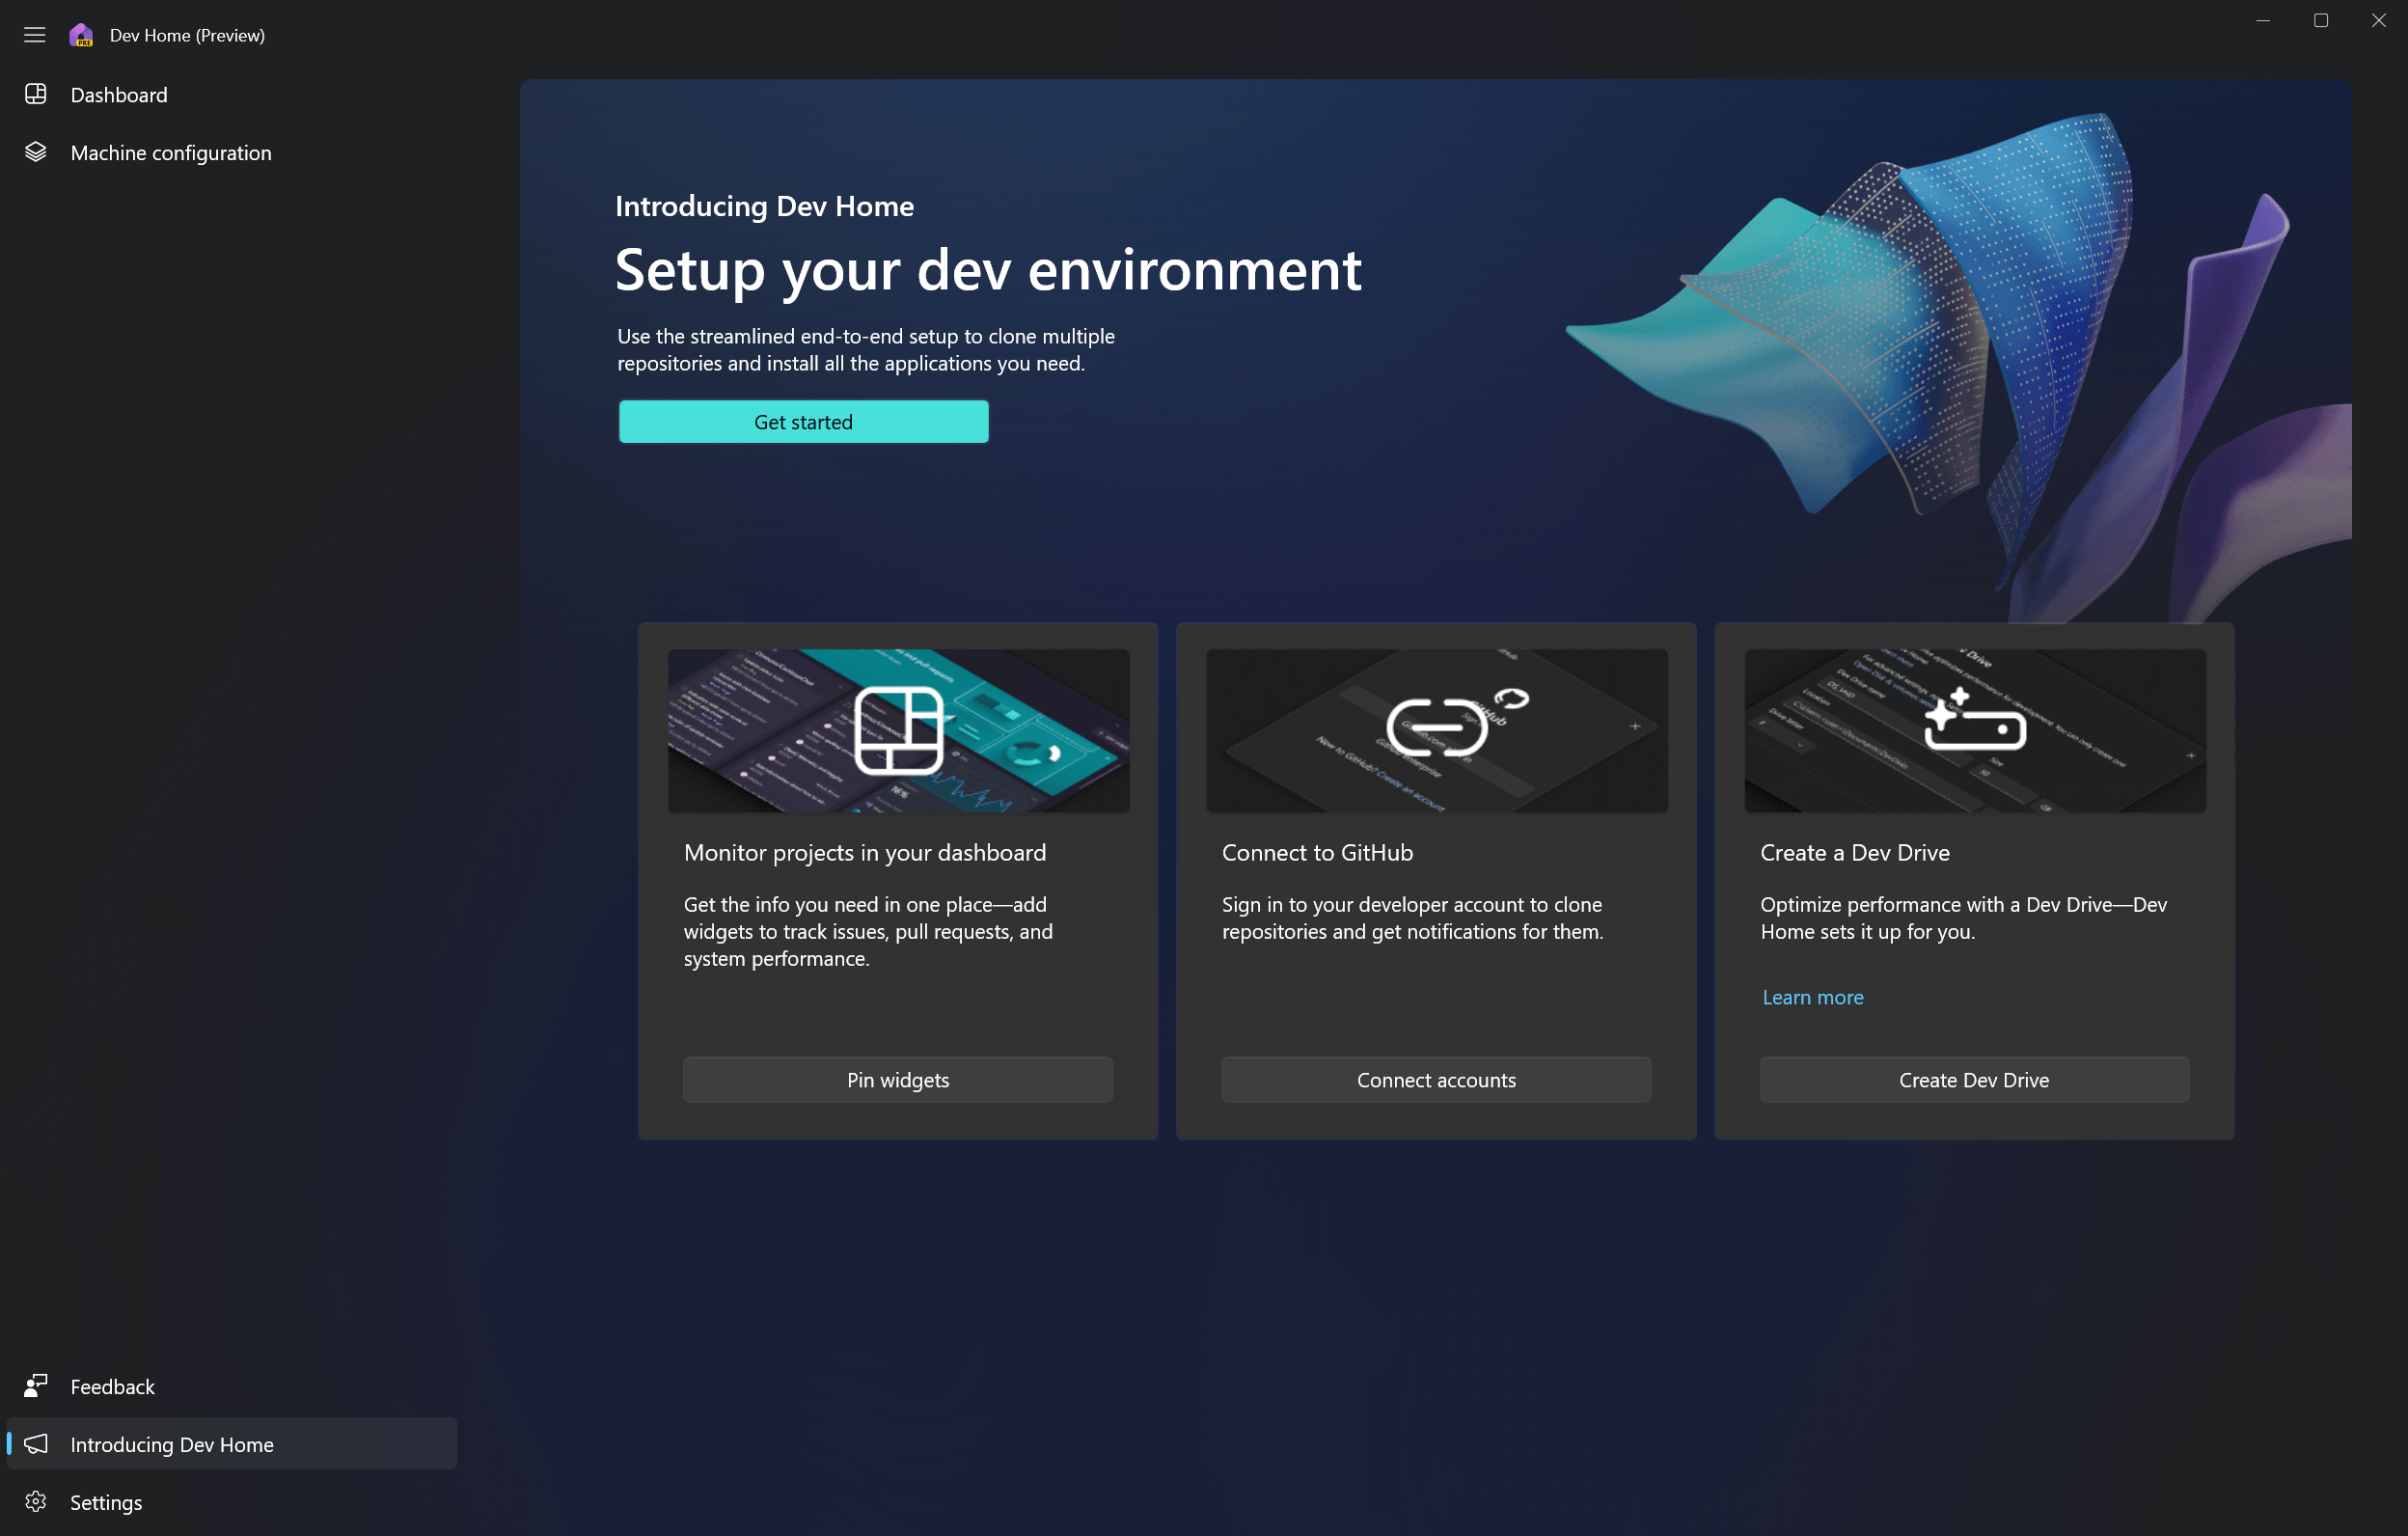 Dev home Homepage